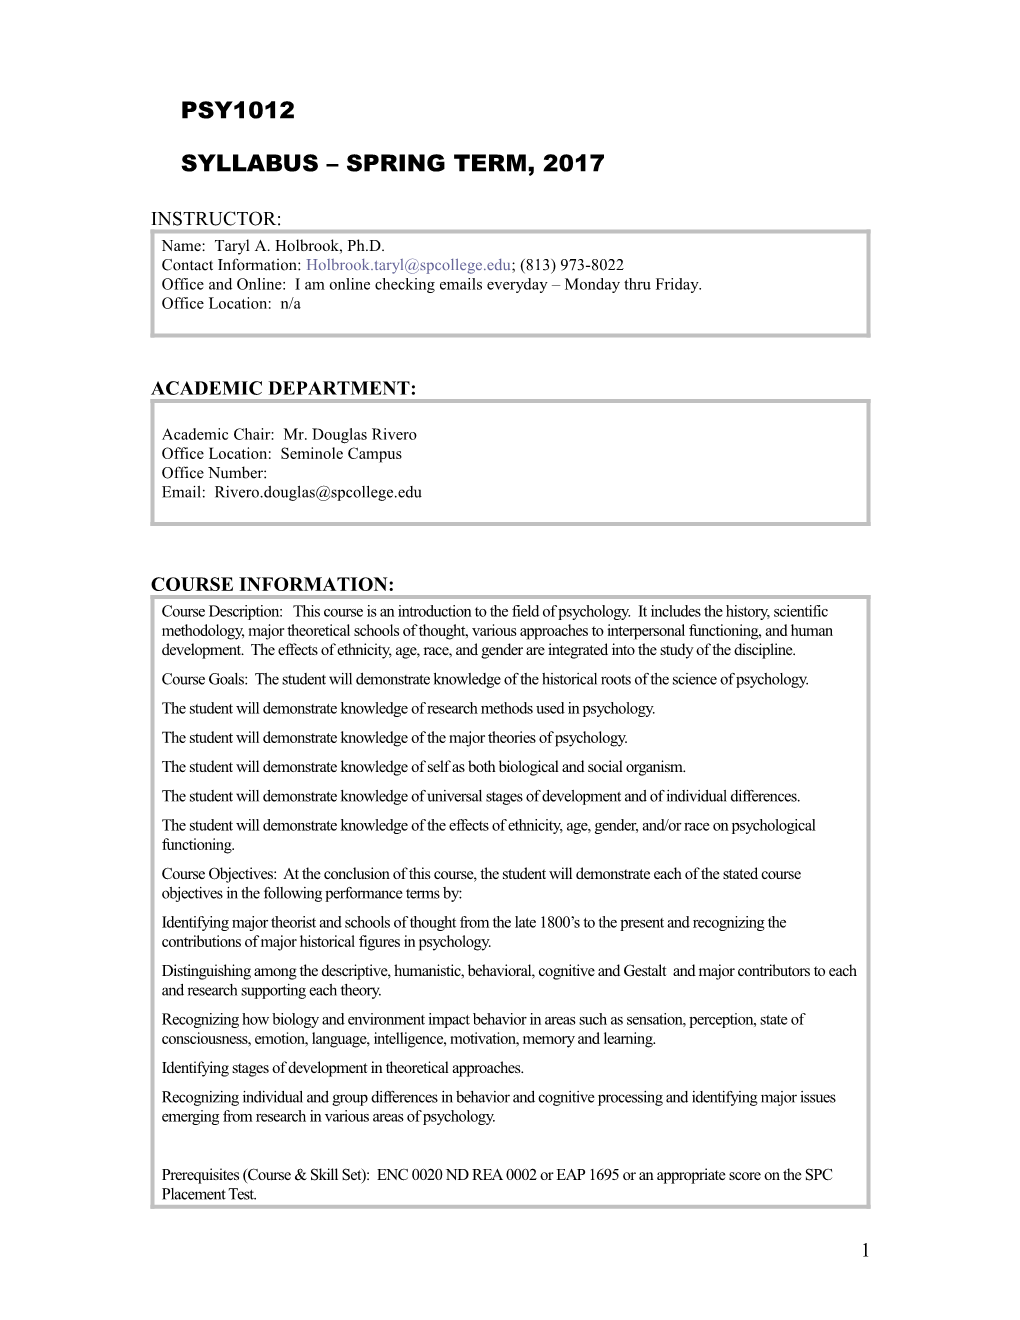 Syllabus Spring Term, 2017